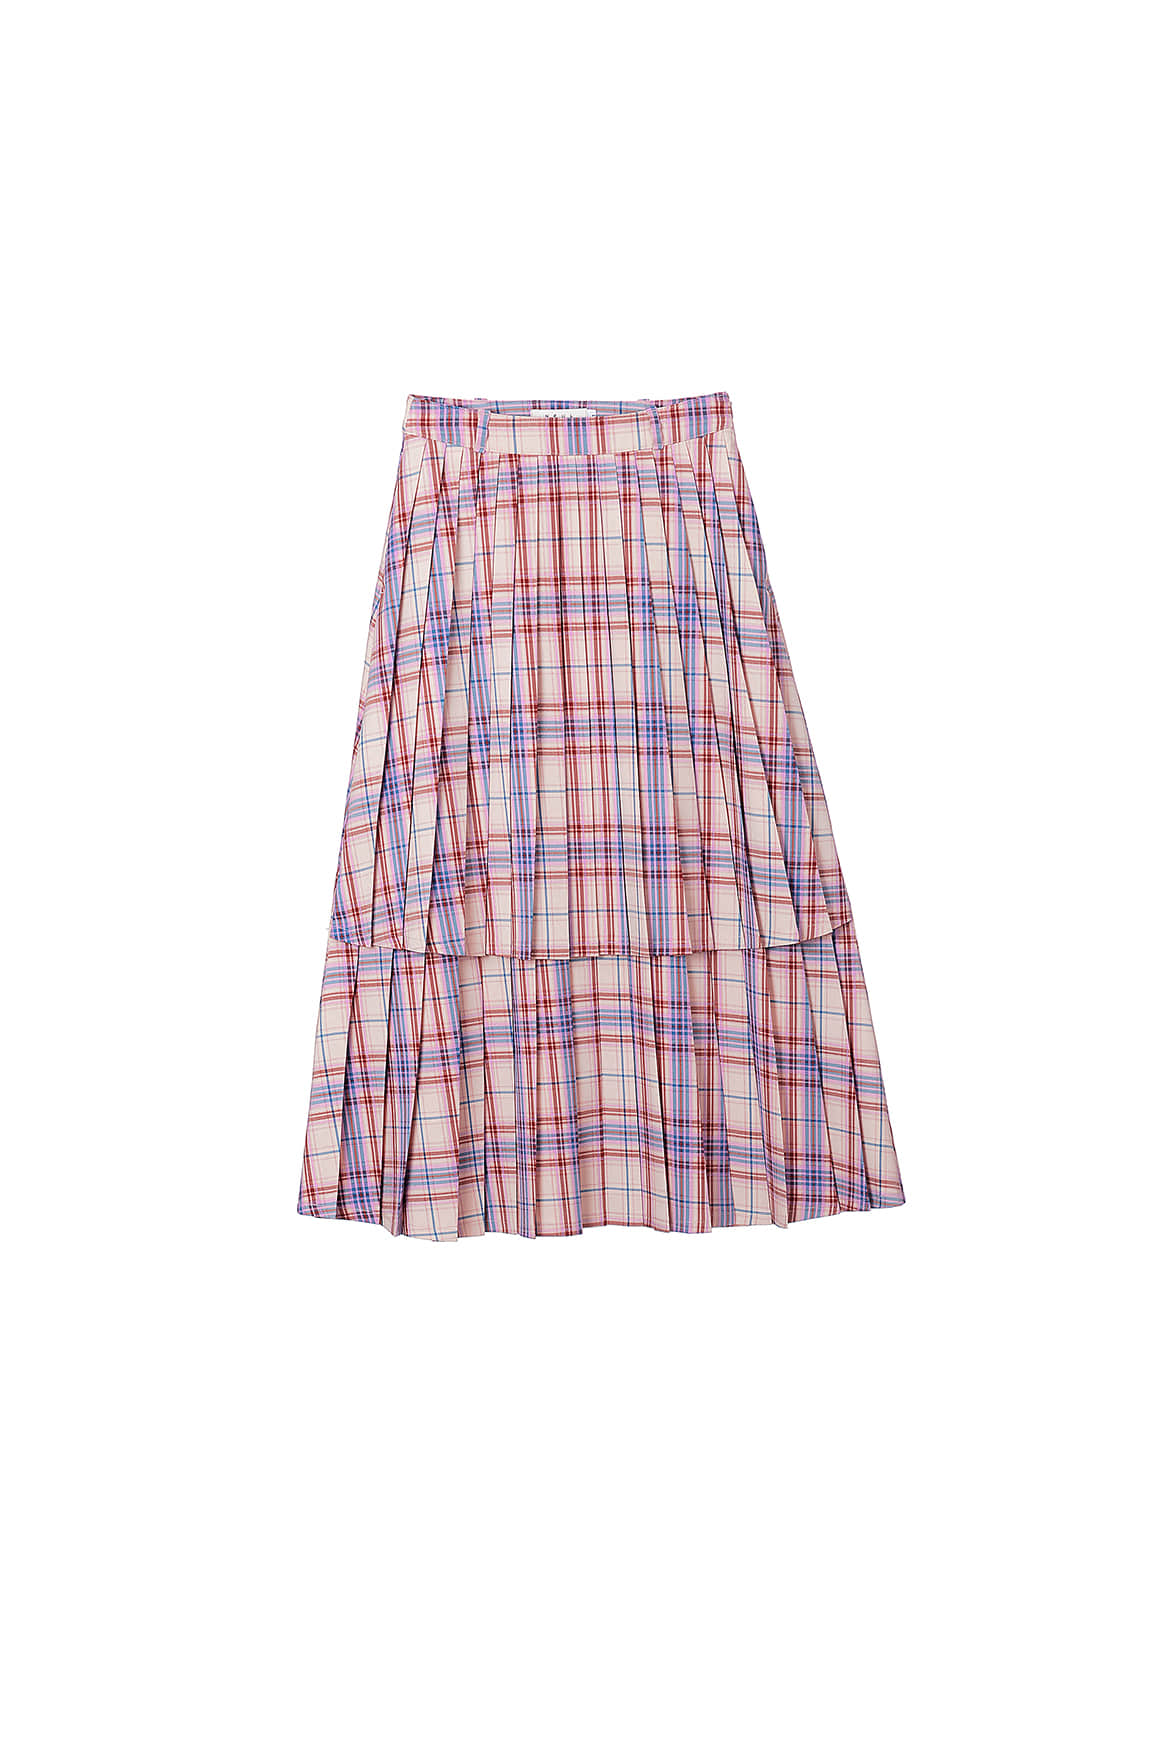 [리퍼브] Pleats-layer Skirt_Pearl Blush-check pattern